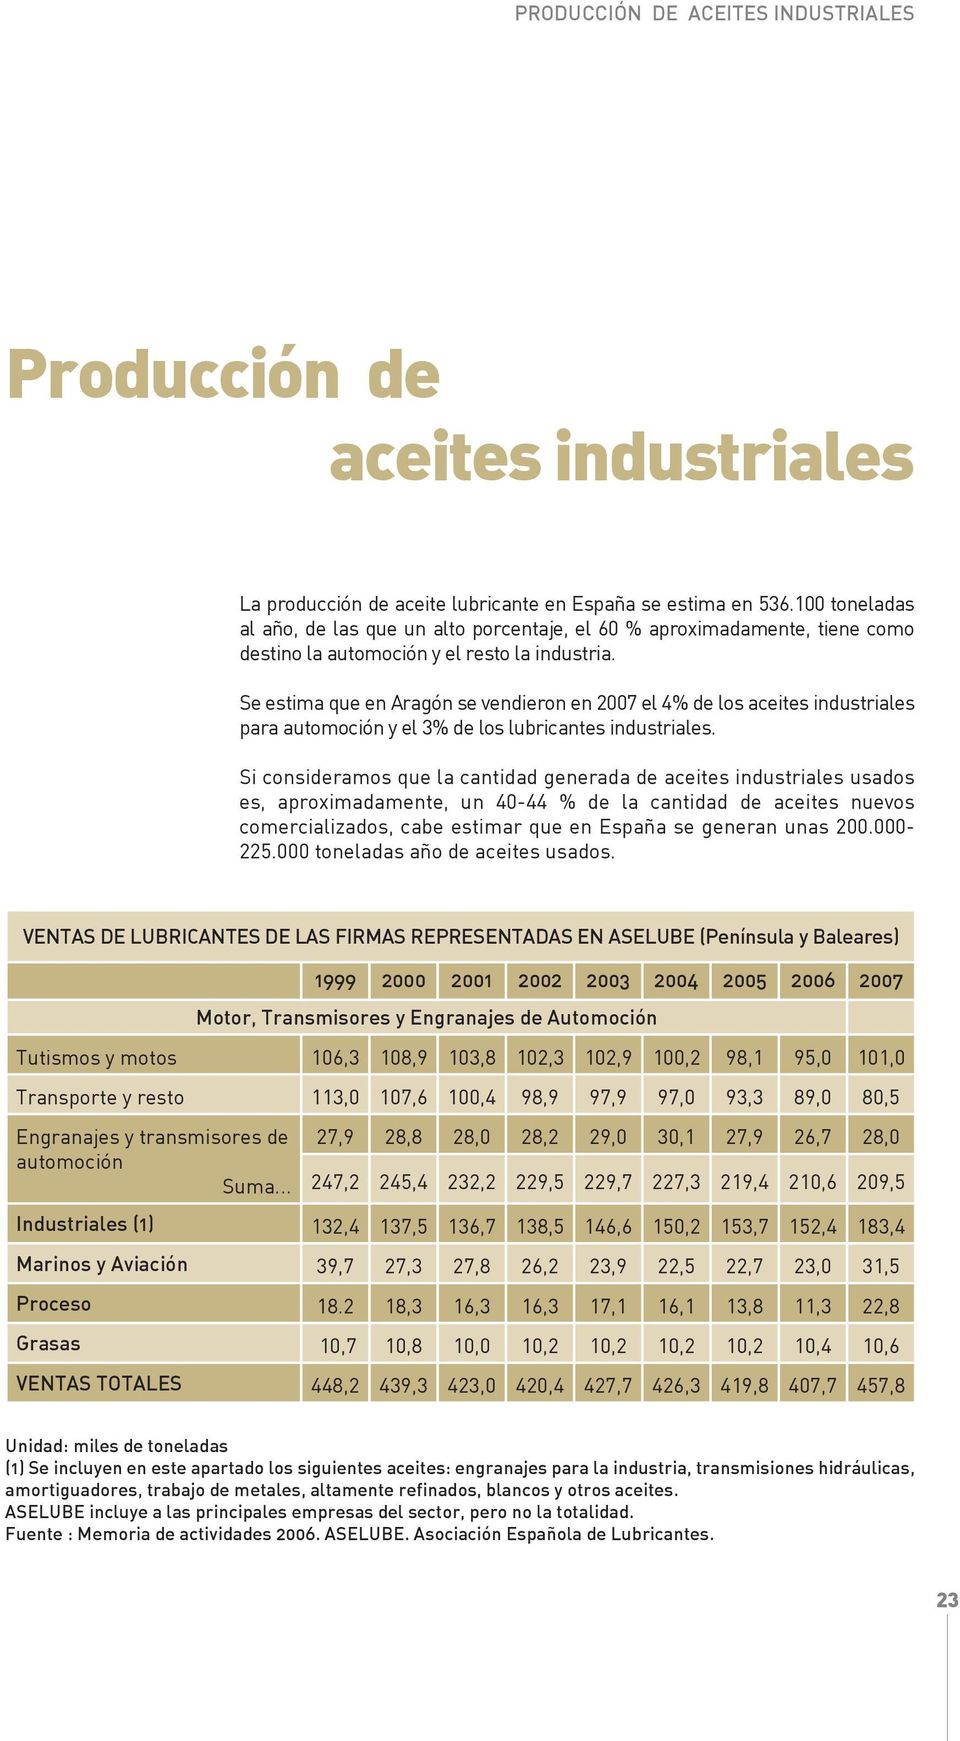 Se estima que en Aragón se vendieron en 2007 el 4% de los aceites industriales para automoción y el 3% de los lubricantes industriales.